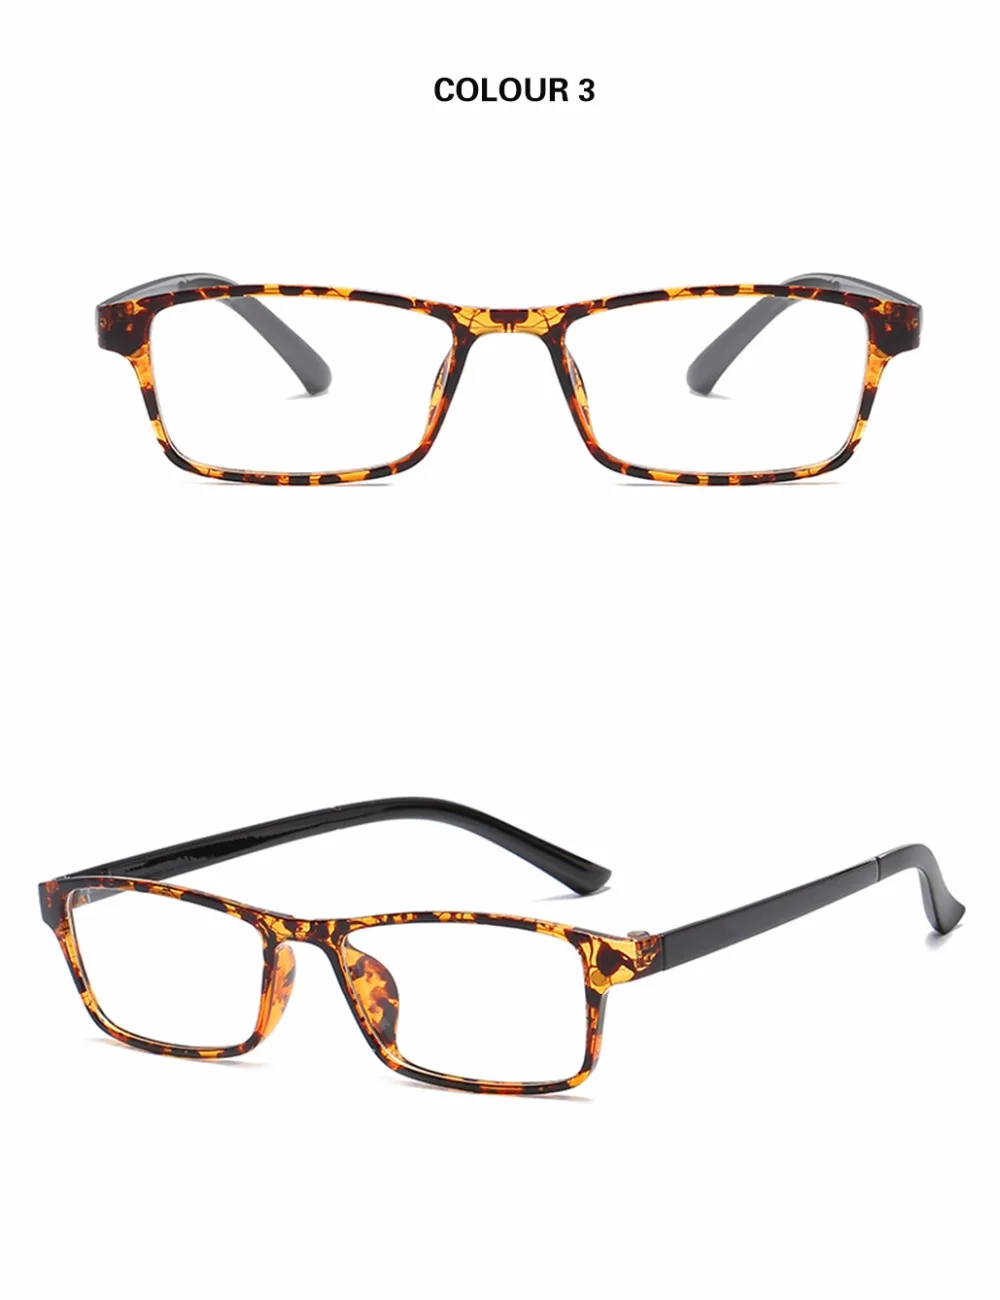 GYsnai магнитный зажим солнцезащитные очки мужские поляризованные солнцезащитные очки женские зеркала покрытие Магнитный зажим на оправе очки мужские солнцезащитные очки UV400